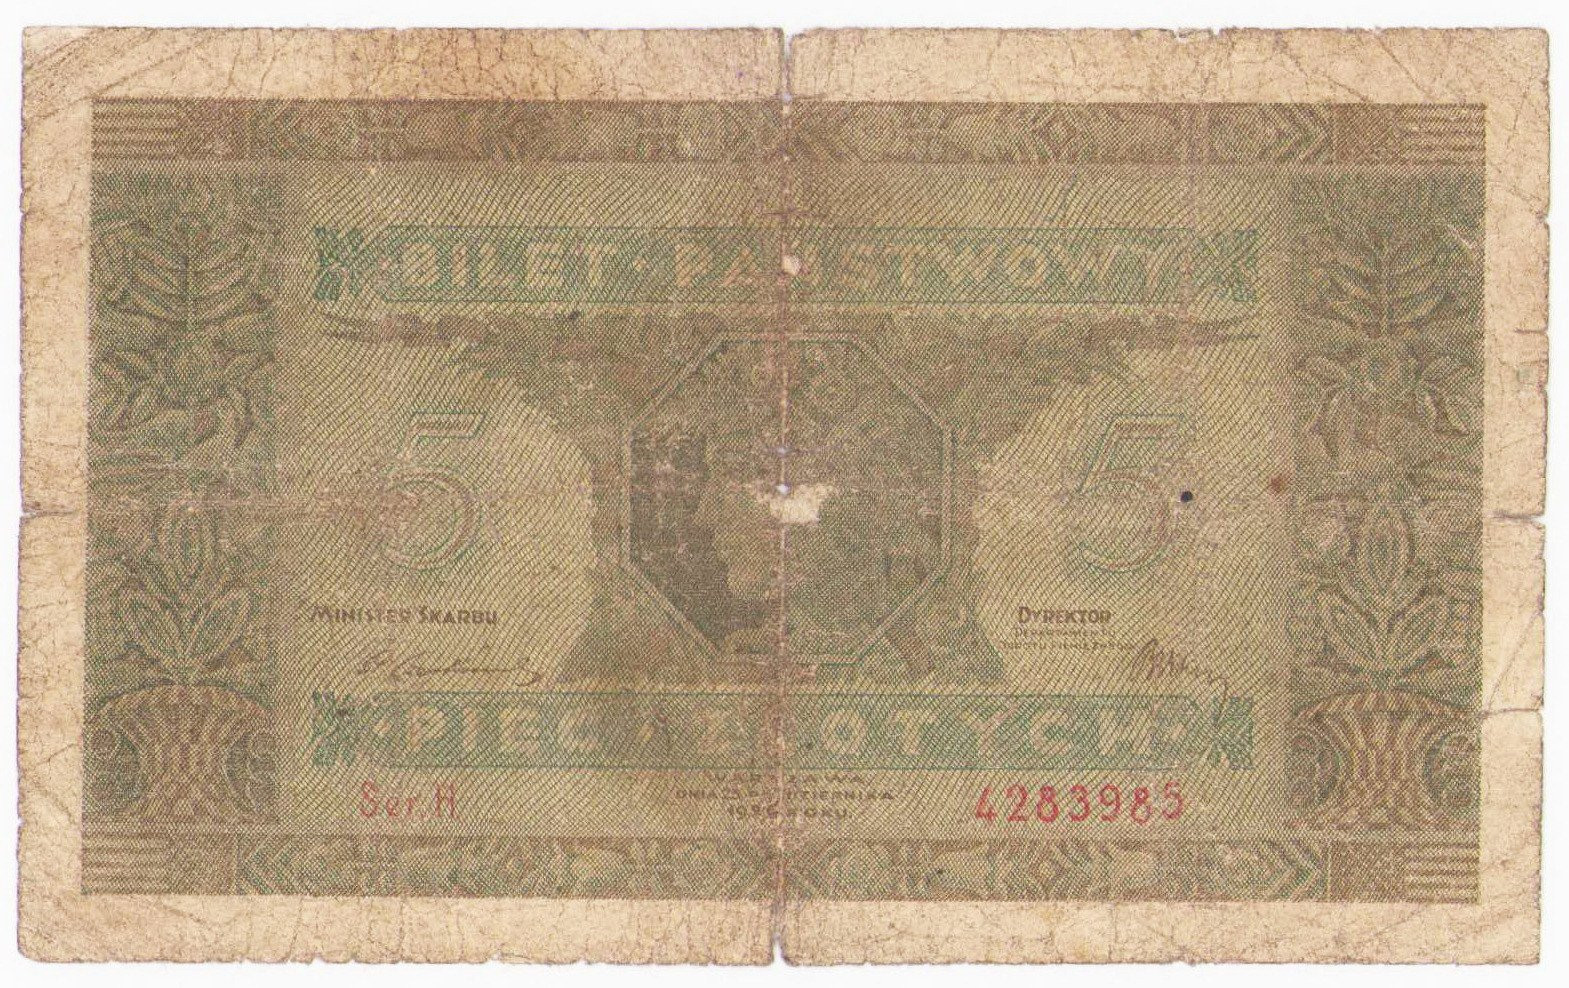 5 złotych 1926 seria H - RZADKI